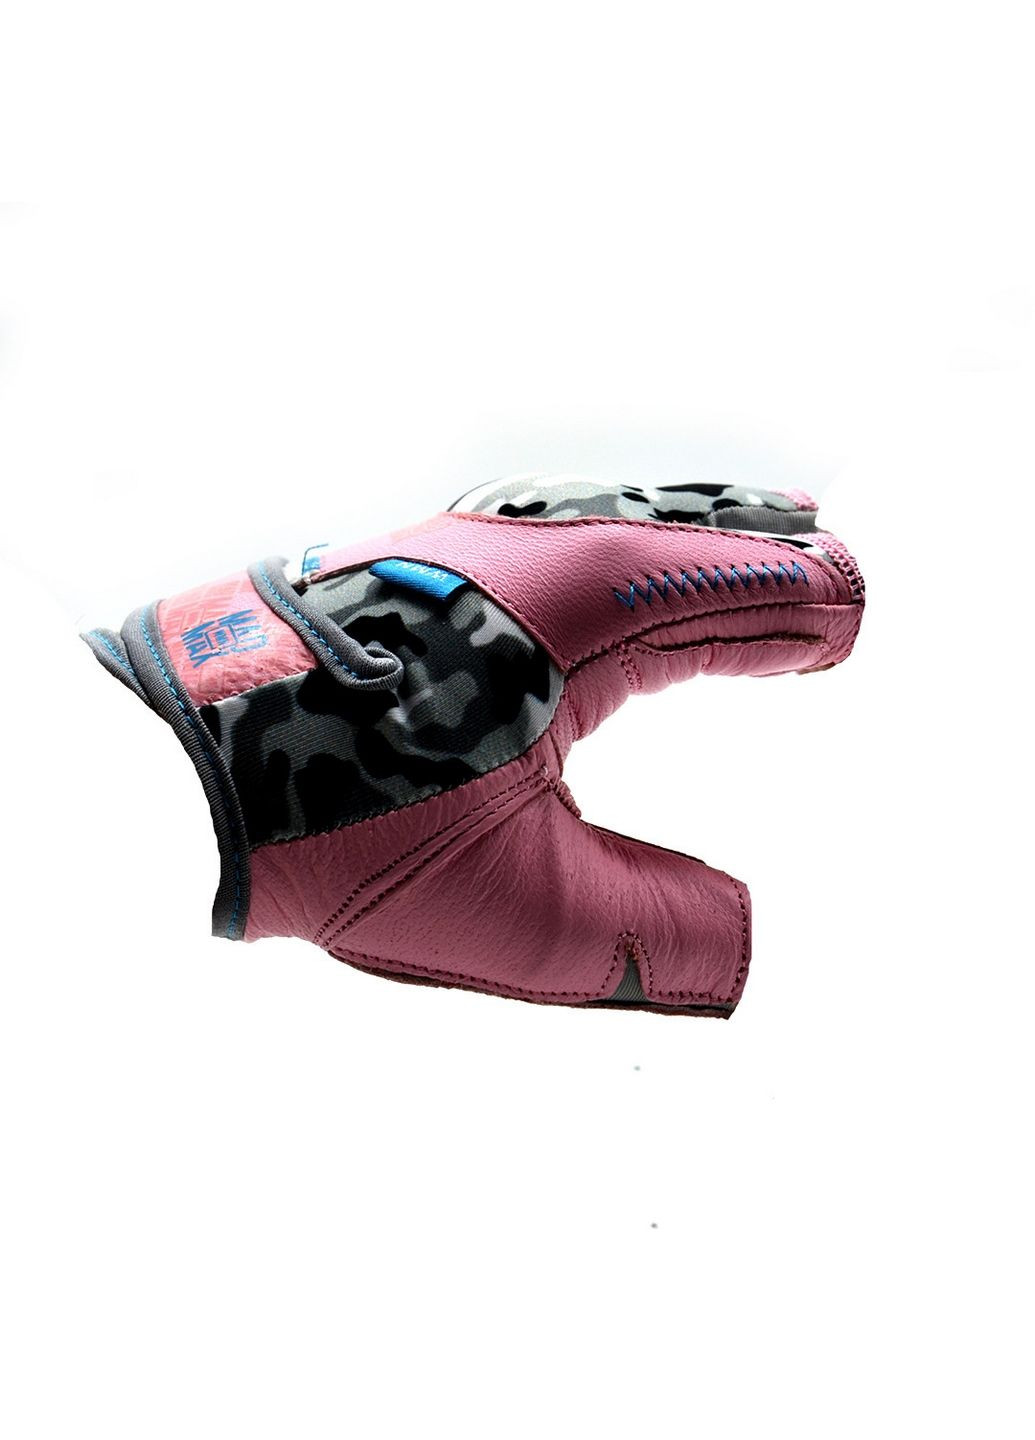 Унисекс перчатки для фитнеса S Mad Max (279326147)